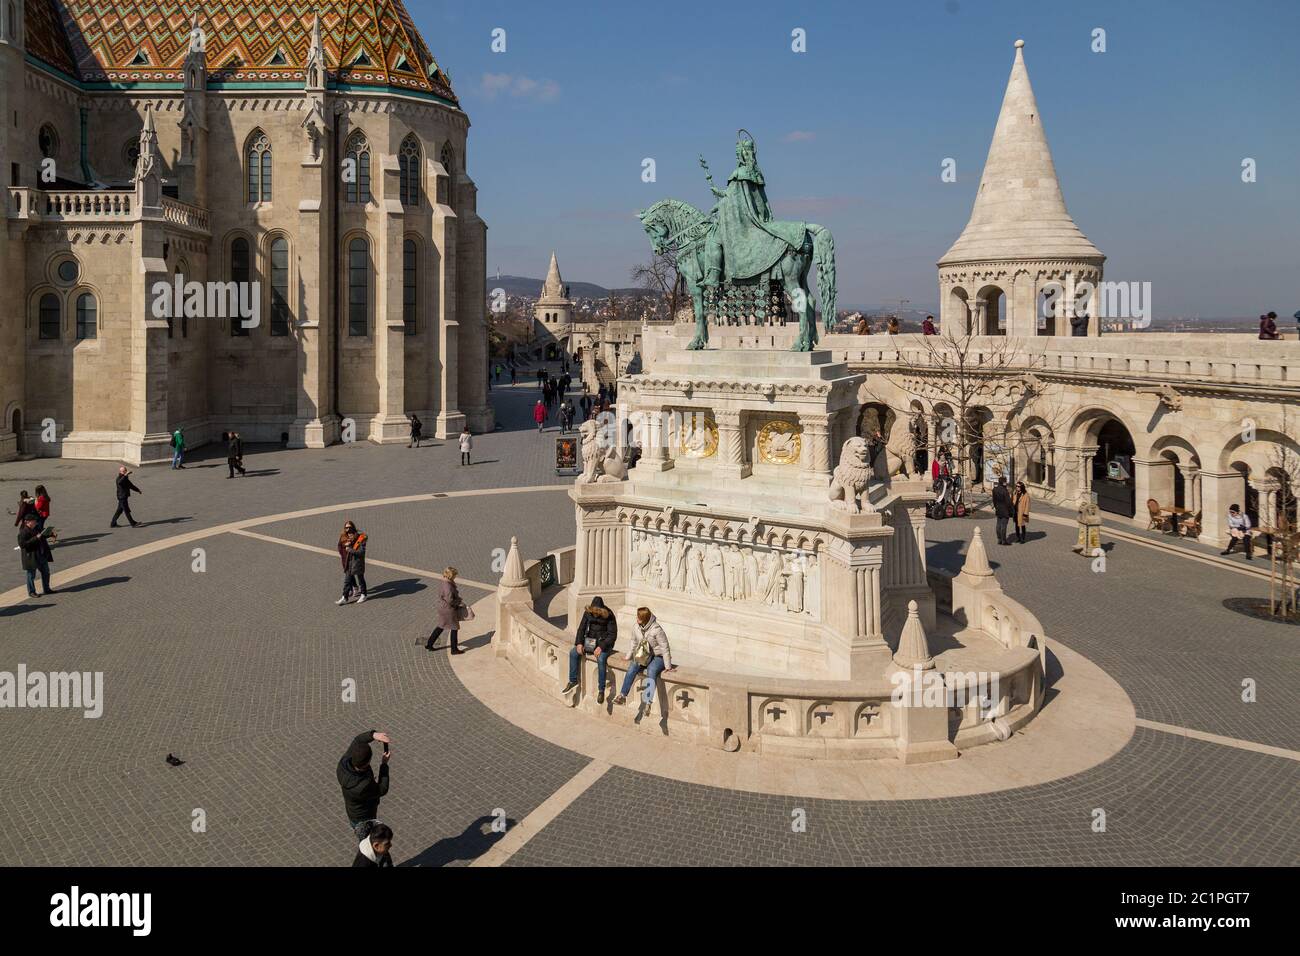 Budapest, Ungarn, März 22 2018: Statue des Heiligen Stephan I., alias Szent Istvan kiraly - der erste König von Ungarn am Typi Stockfoto